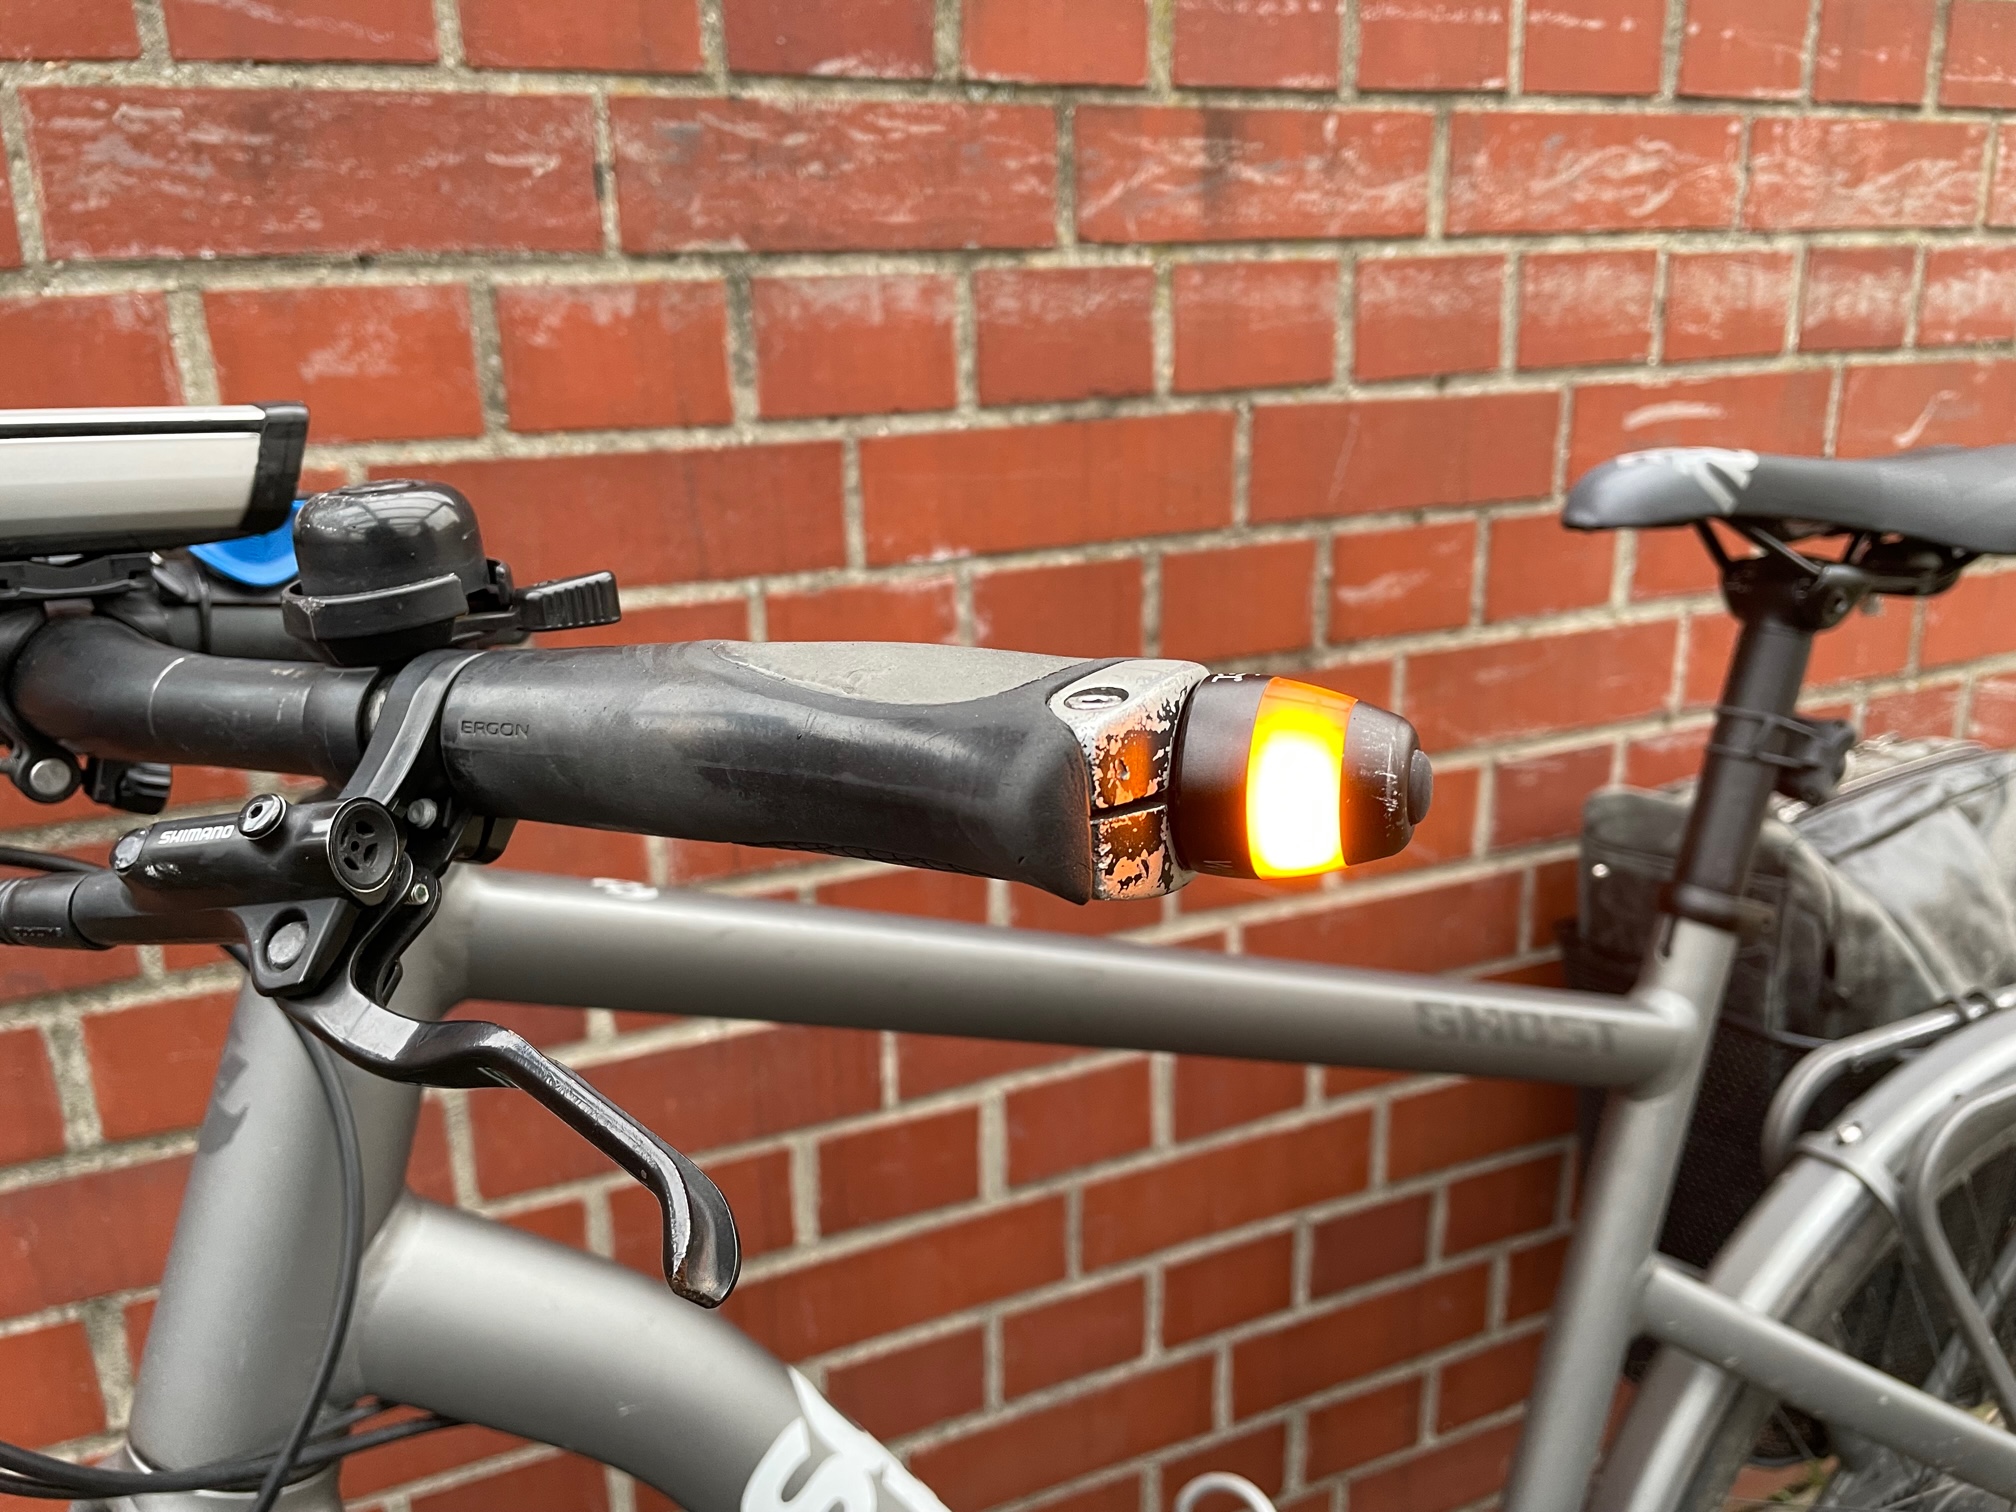 CYCL Fahrrad Blinker WingLights – Radverkehr